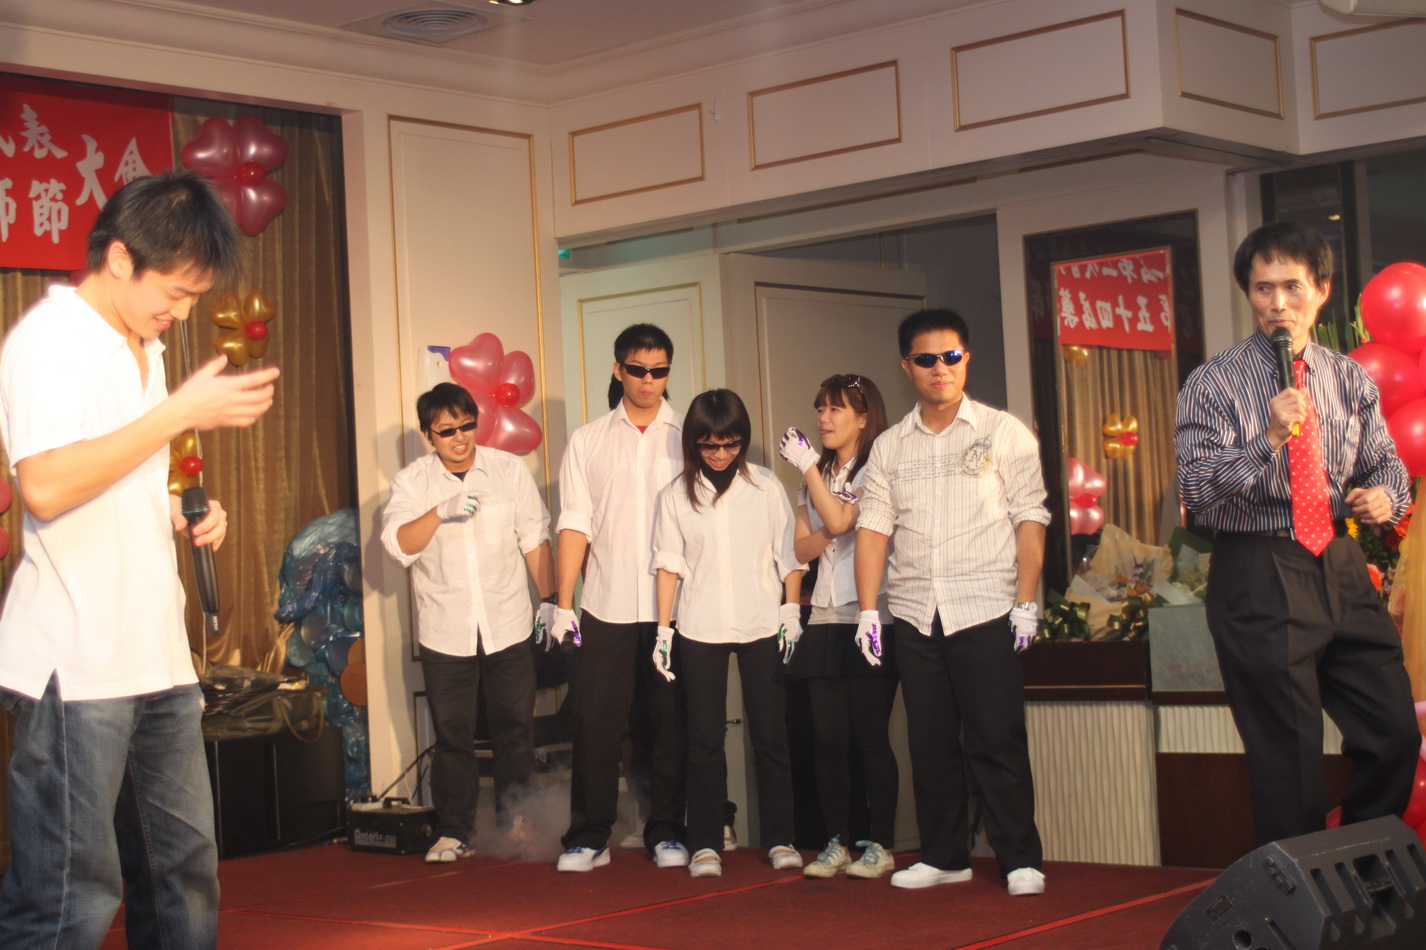 089 神秘人物現身 - 亞東醫院第二組人馬上台搞笑